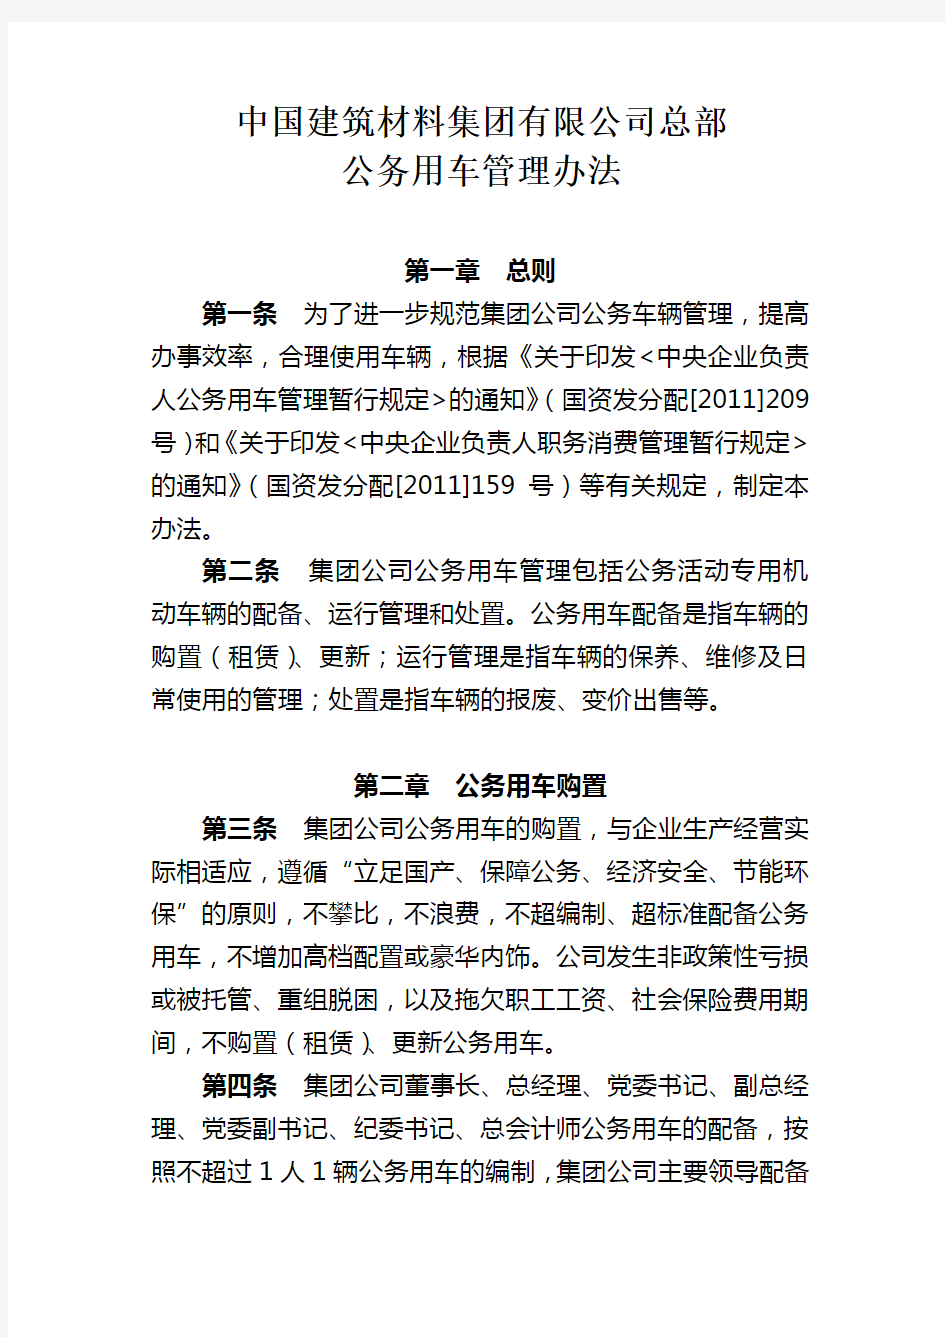 中国建筑材料集团公司总部公务用车管理办法